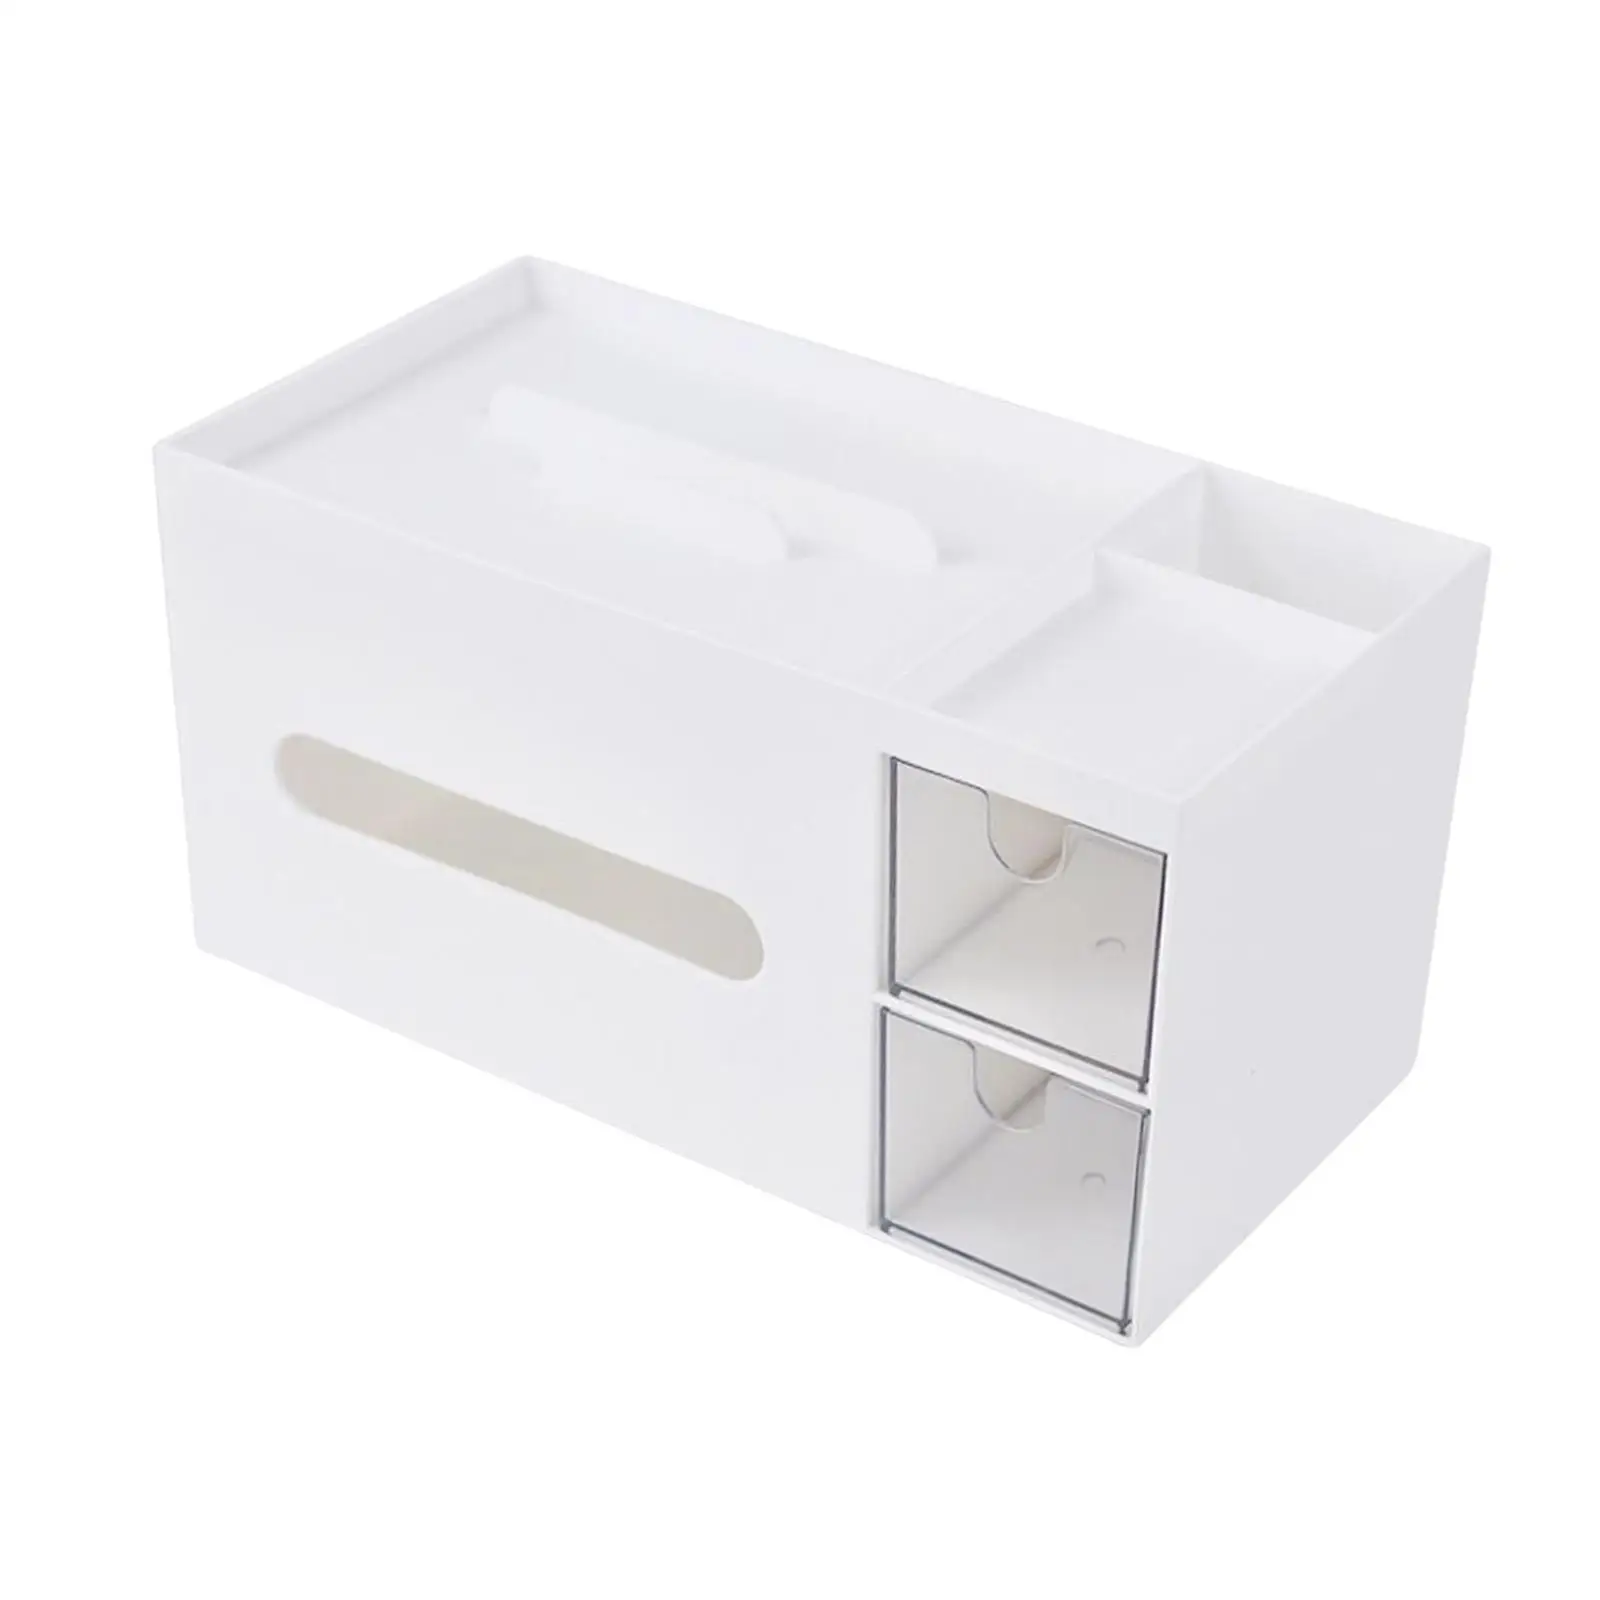 Tissue Box Holder with Phone Holder Tissue Dispenser Facial Tissue Holder Case for Office Table Home Bedroom Living Room